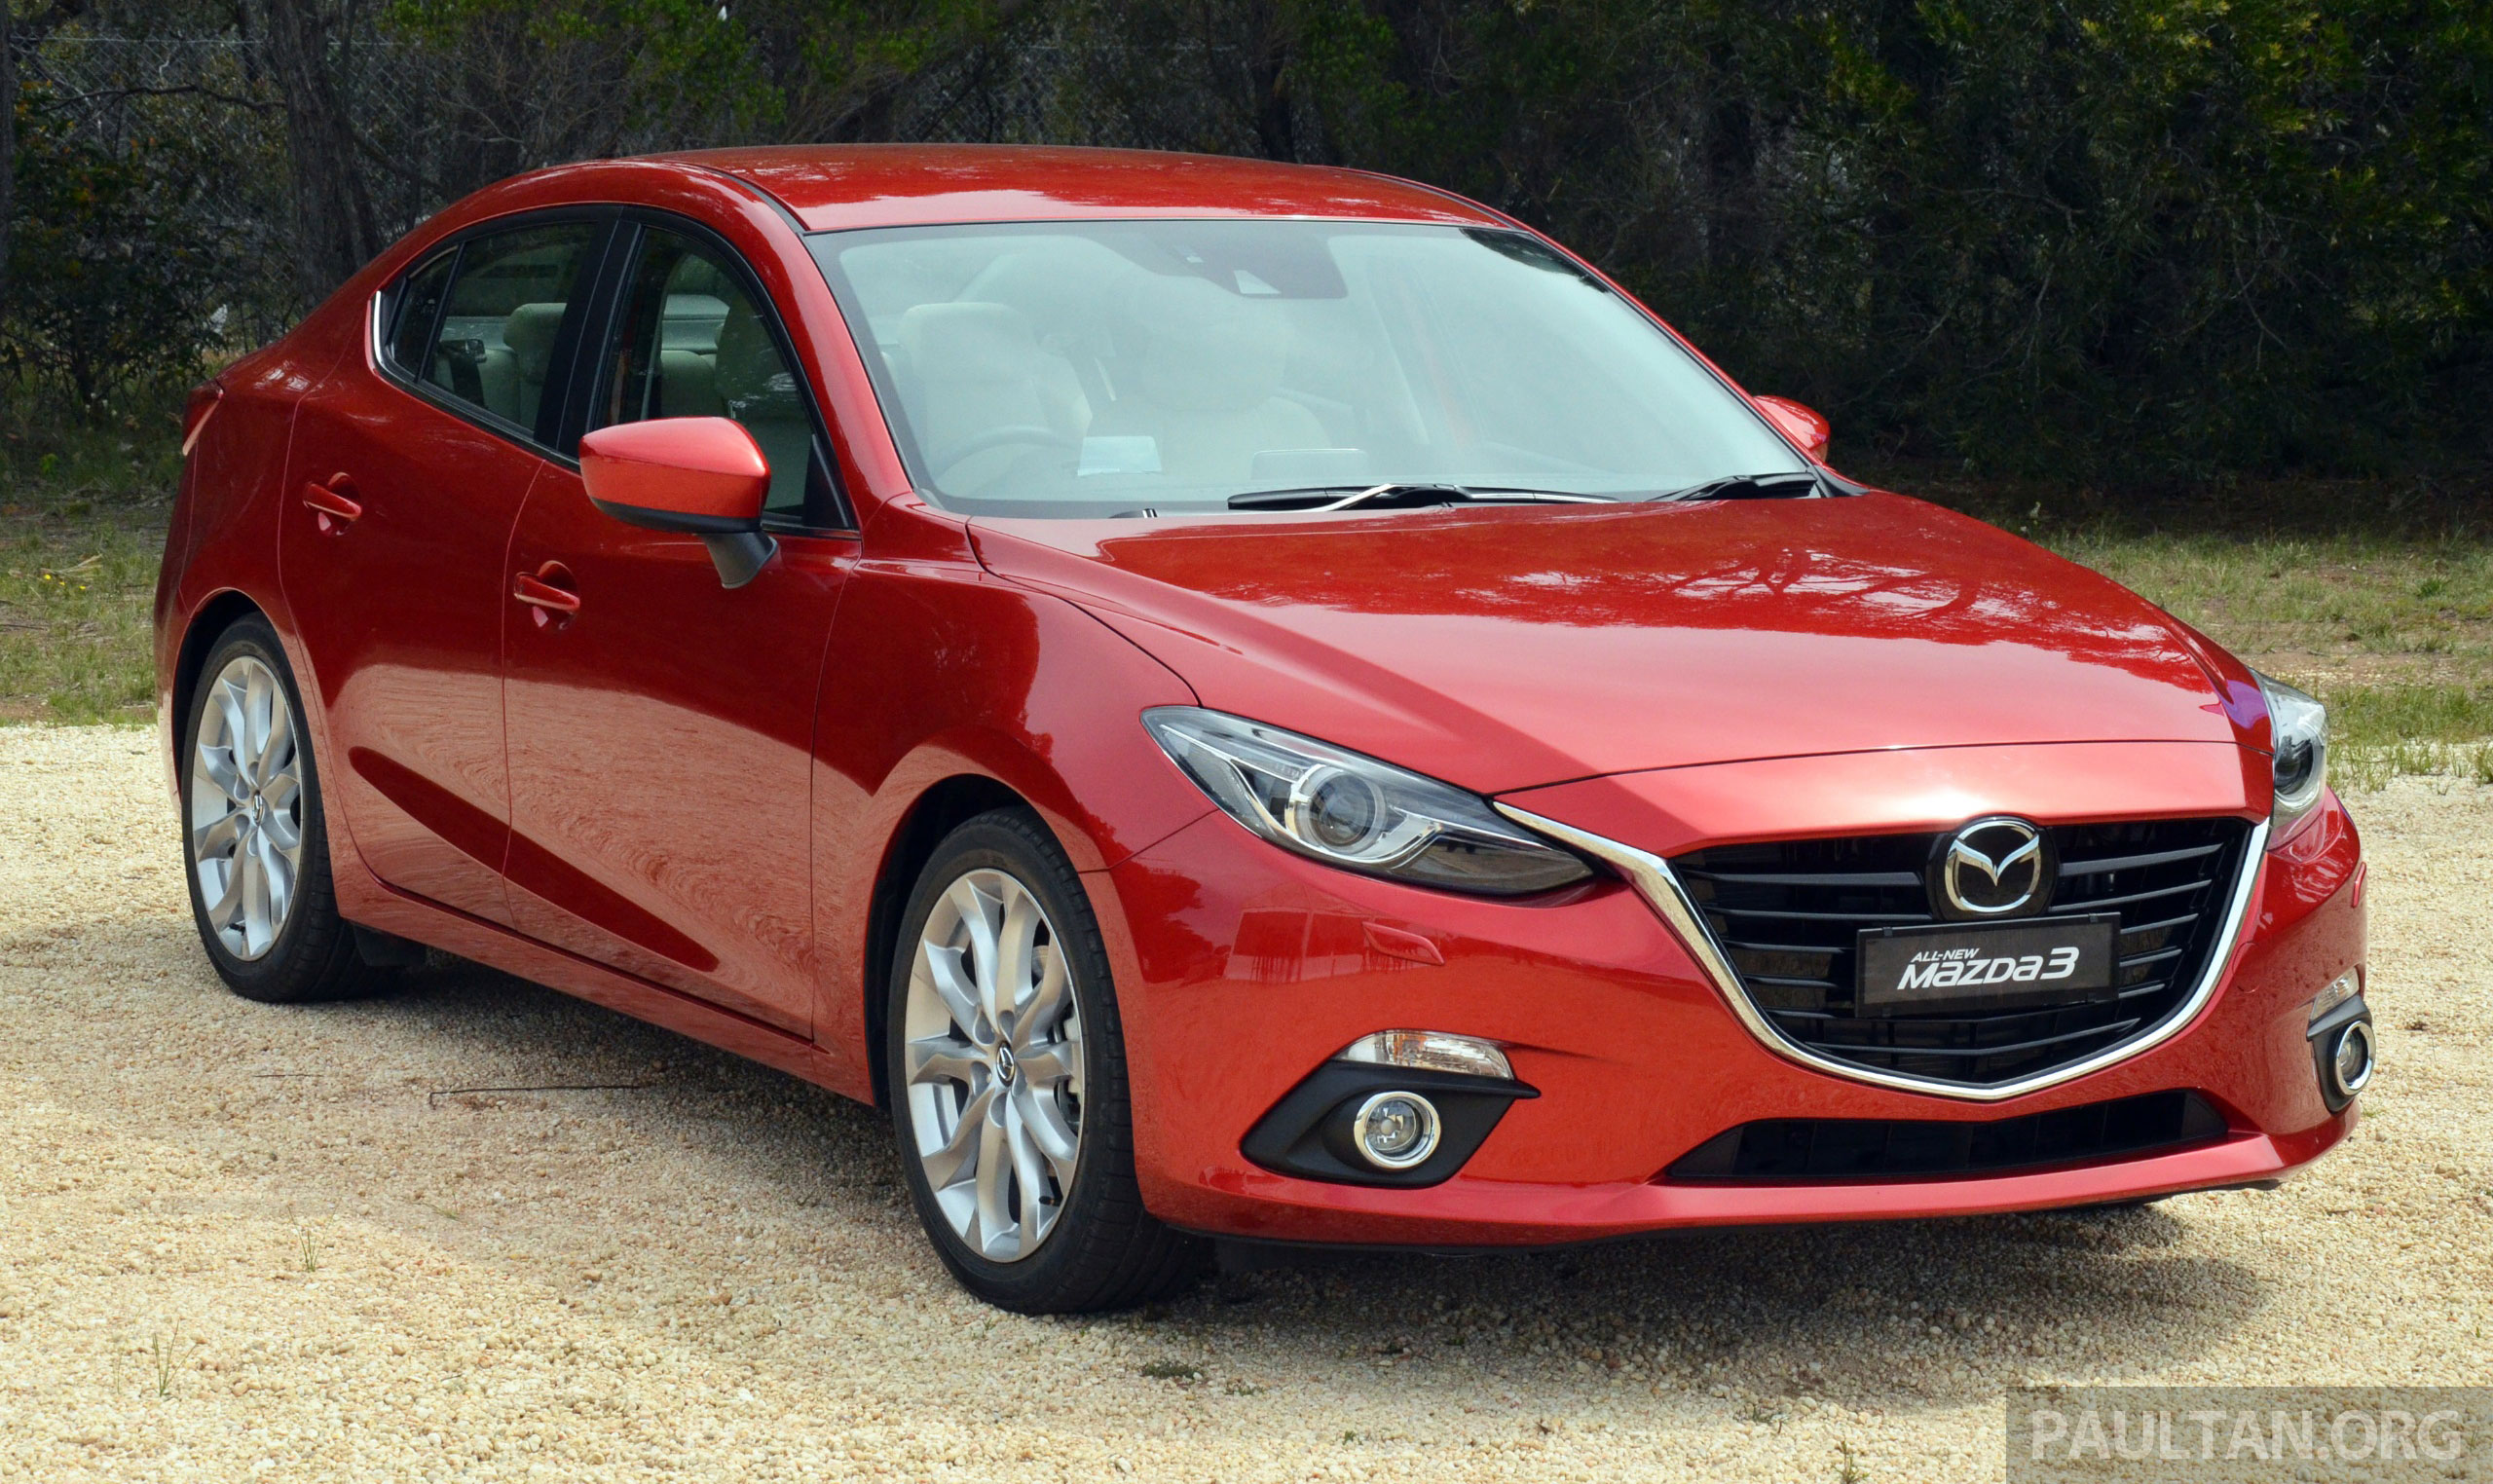 CBU Mazda 3 Sedan estimated specs & price unveiled